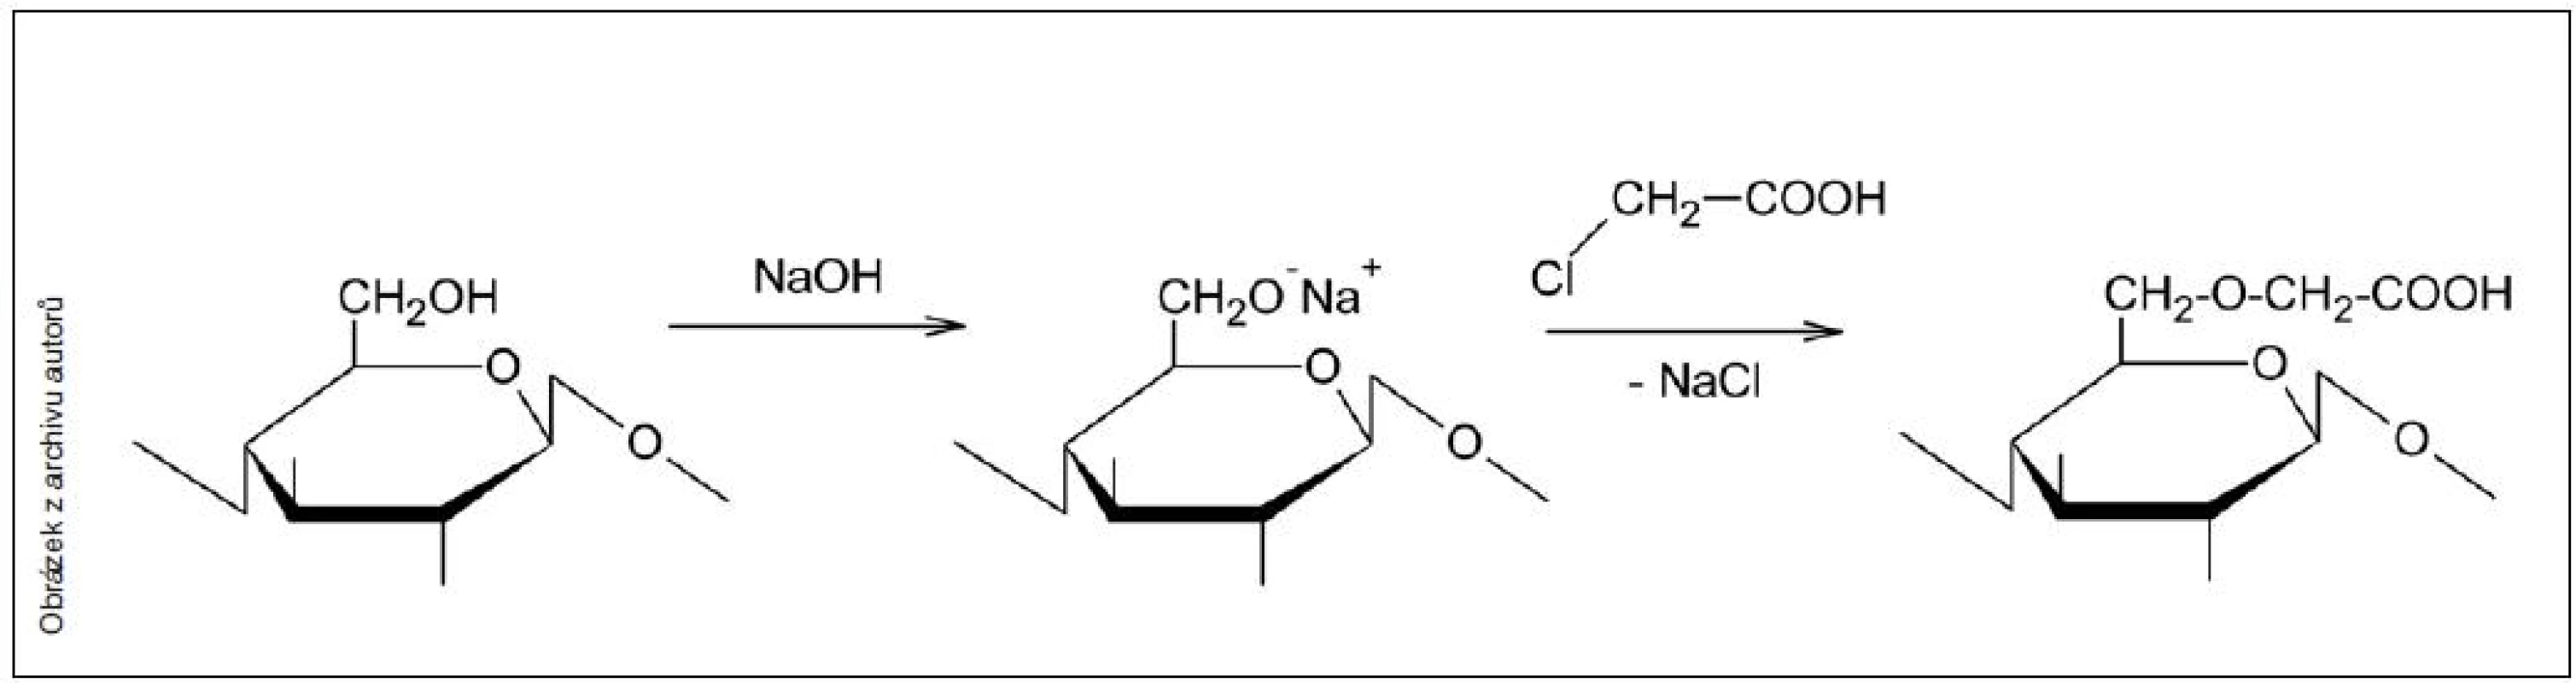 Karboxymethylace celulózy – zjednodušené schéma reakce na C6 uhlíku